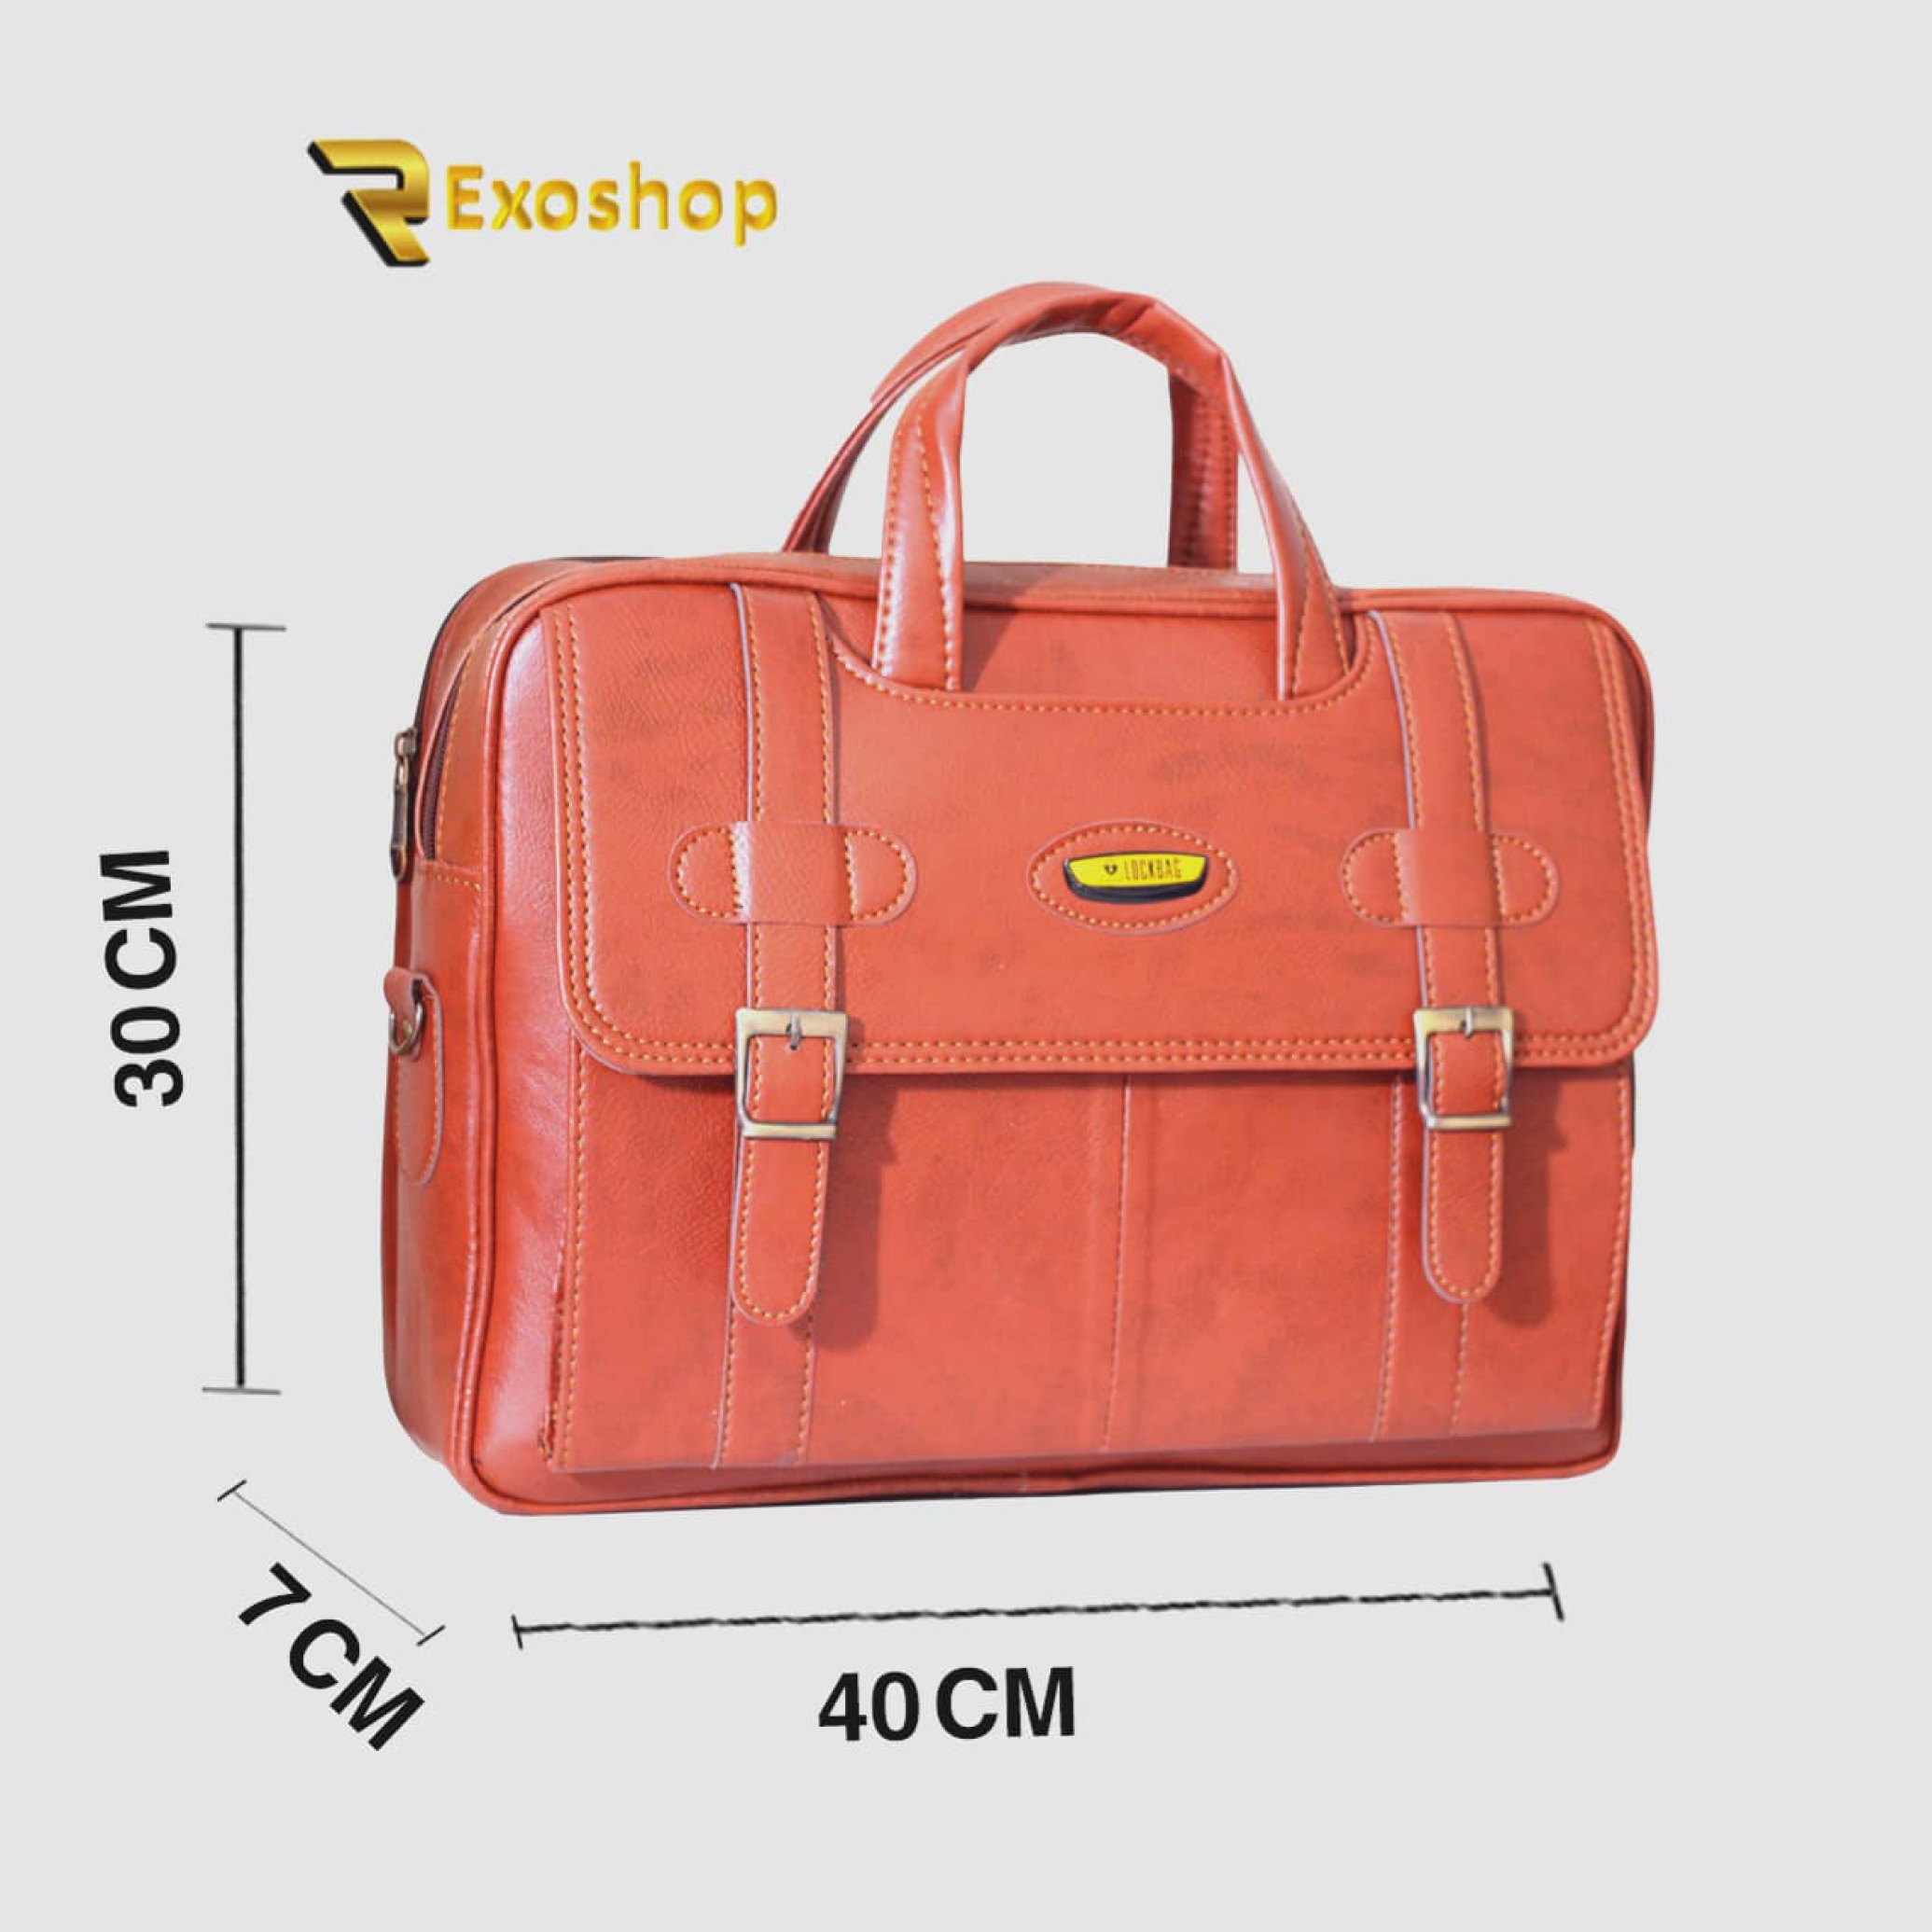  کیف اداری لاک بگ مدل 31155 یکی از بهترین کیف ها است که با بهترین کیفیت و با قیمتی ارزان در رکسوشاپ موجود است 